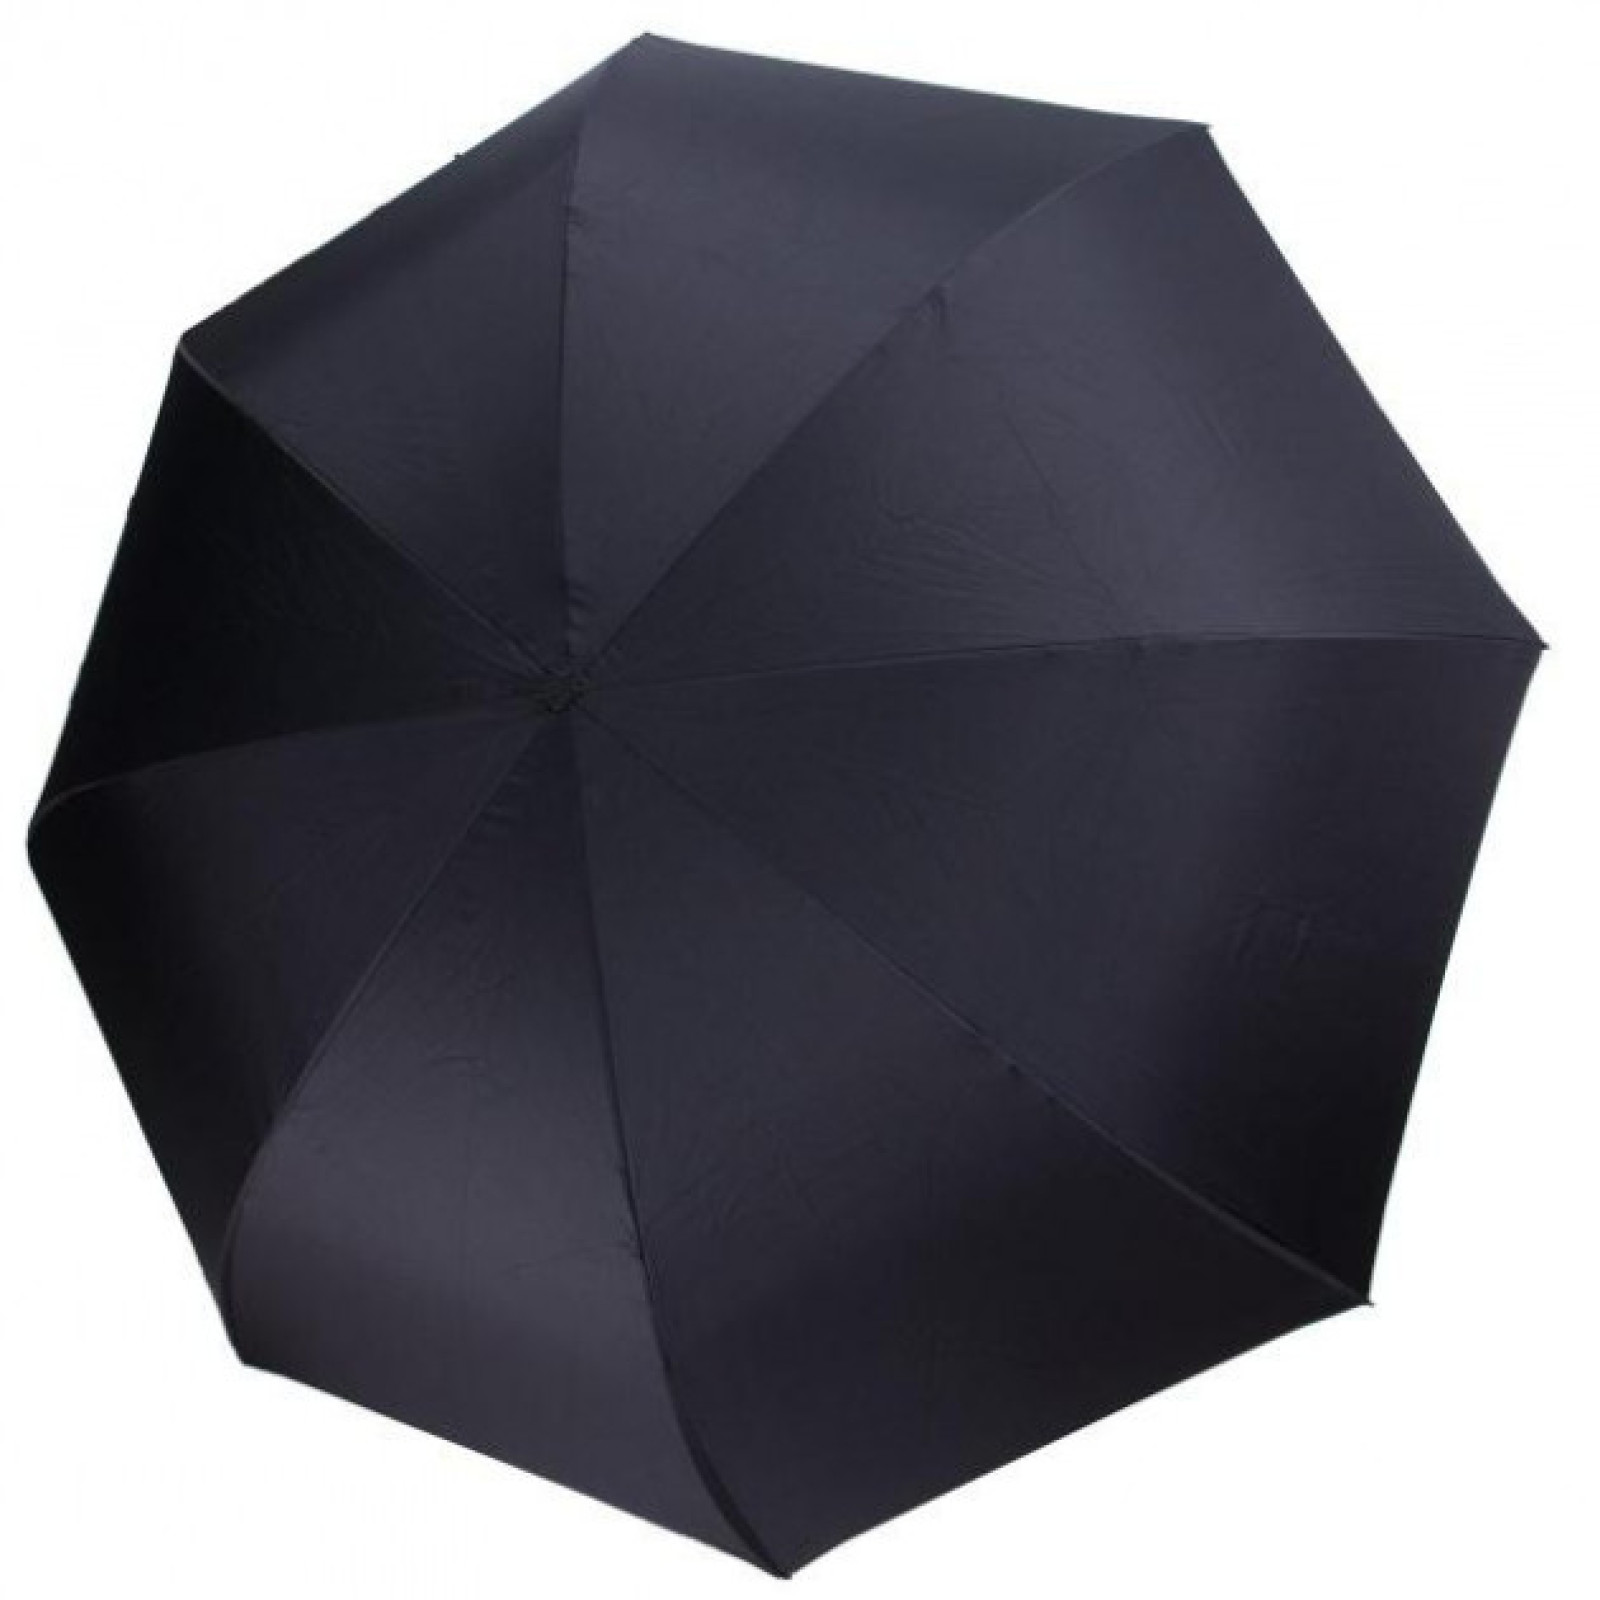 Зонт обратного сложения, антизонт, умный зонт, зонт наоборот Up Brella Малиновый 150995